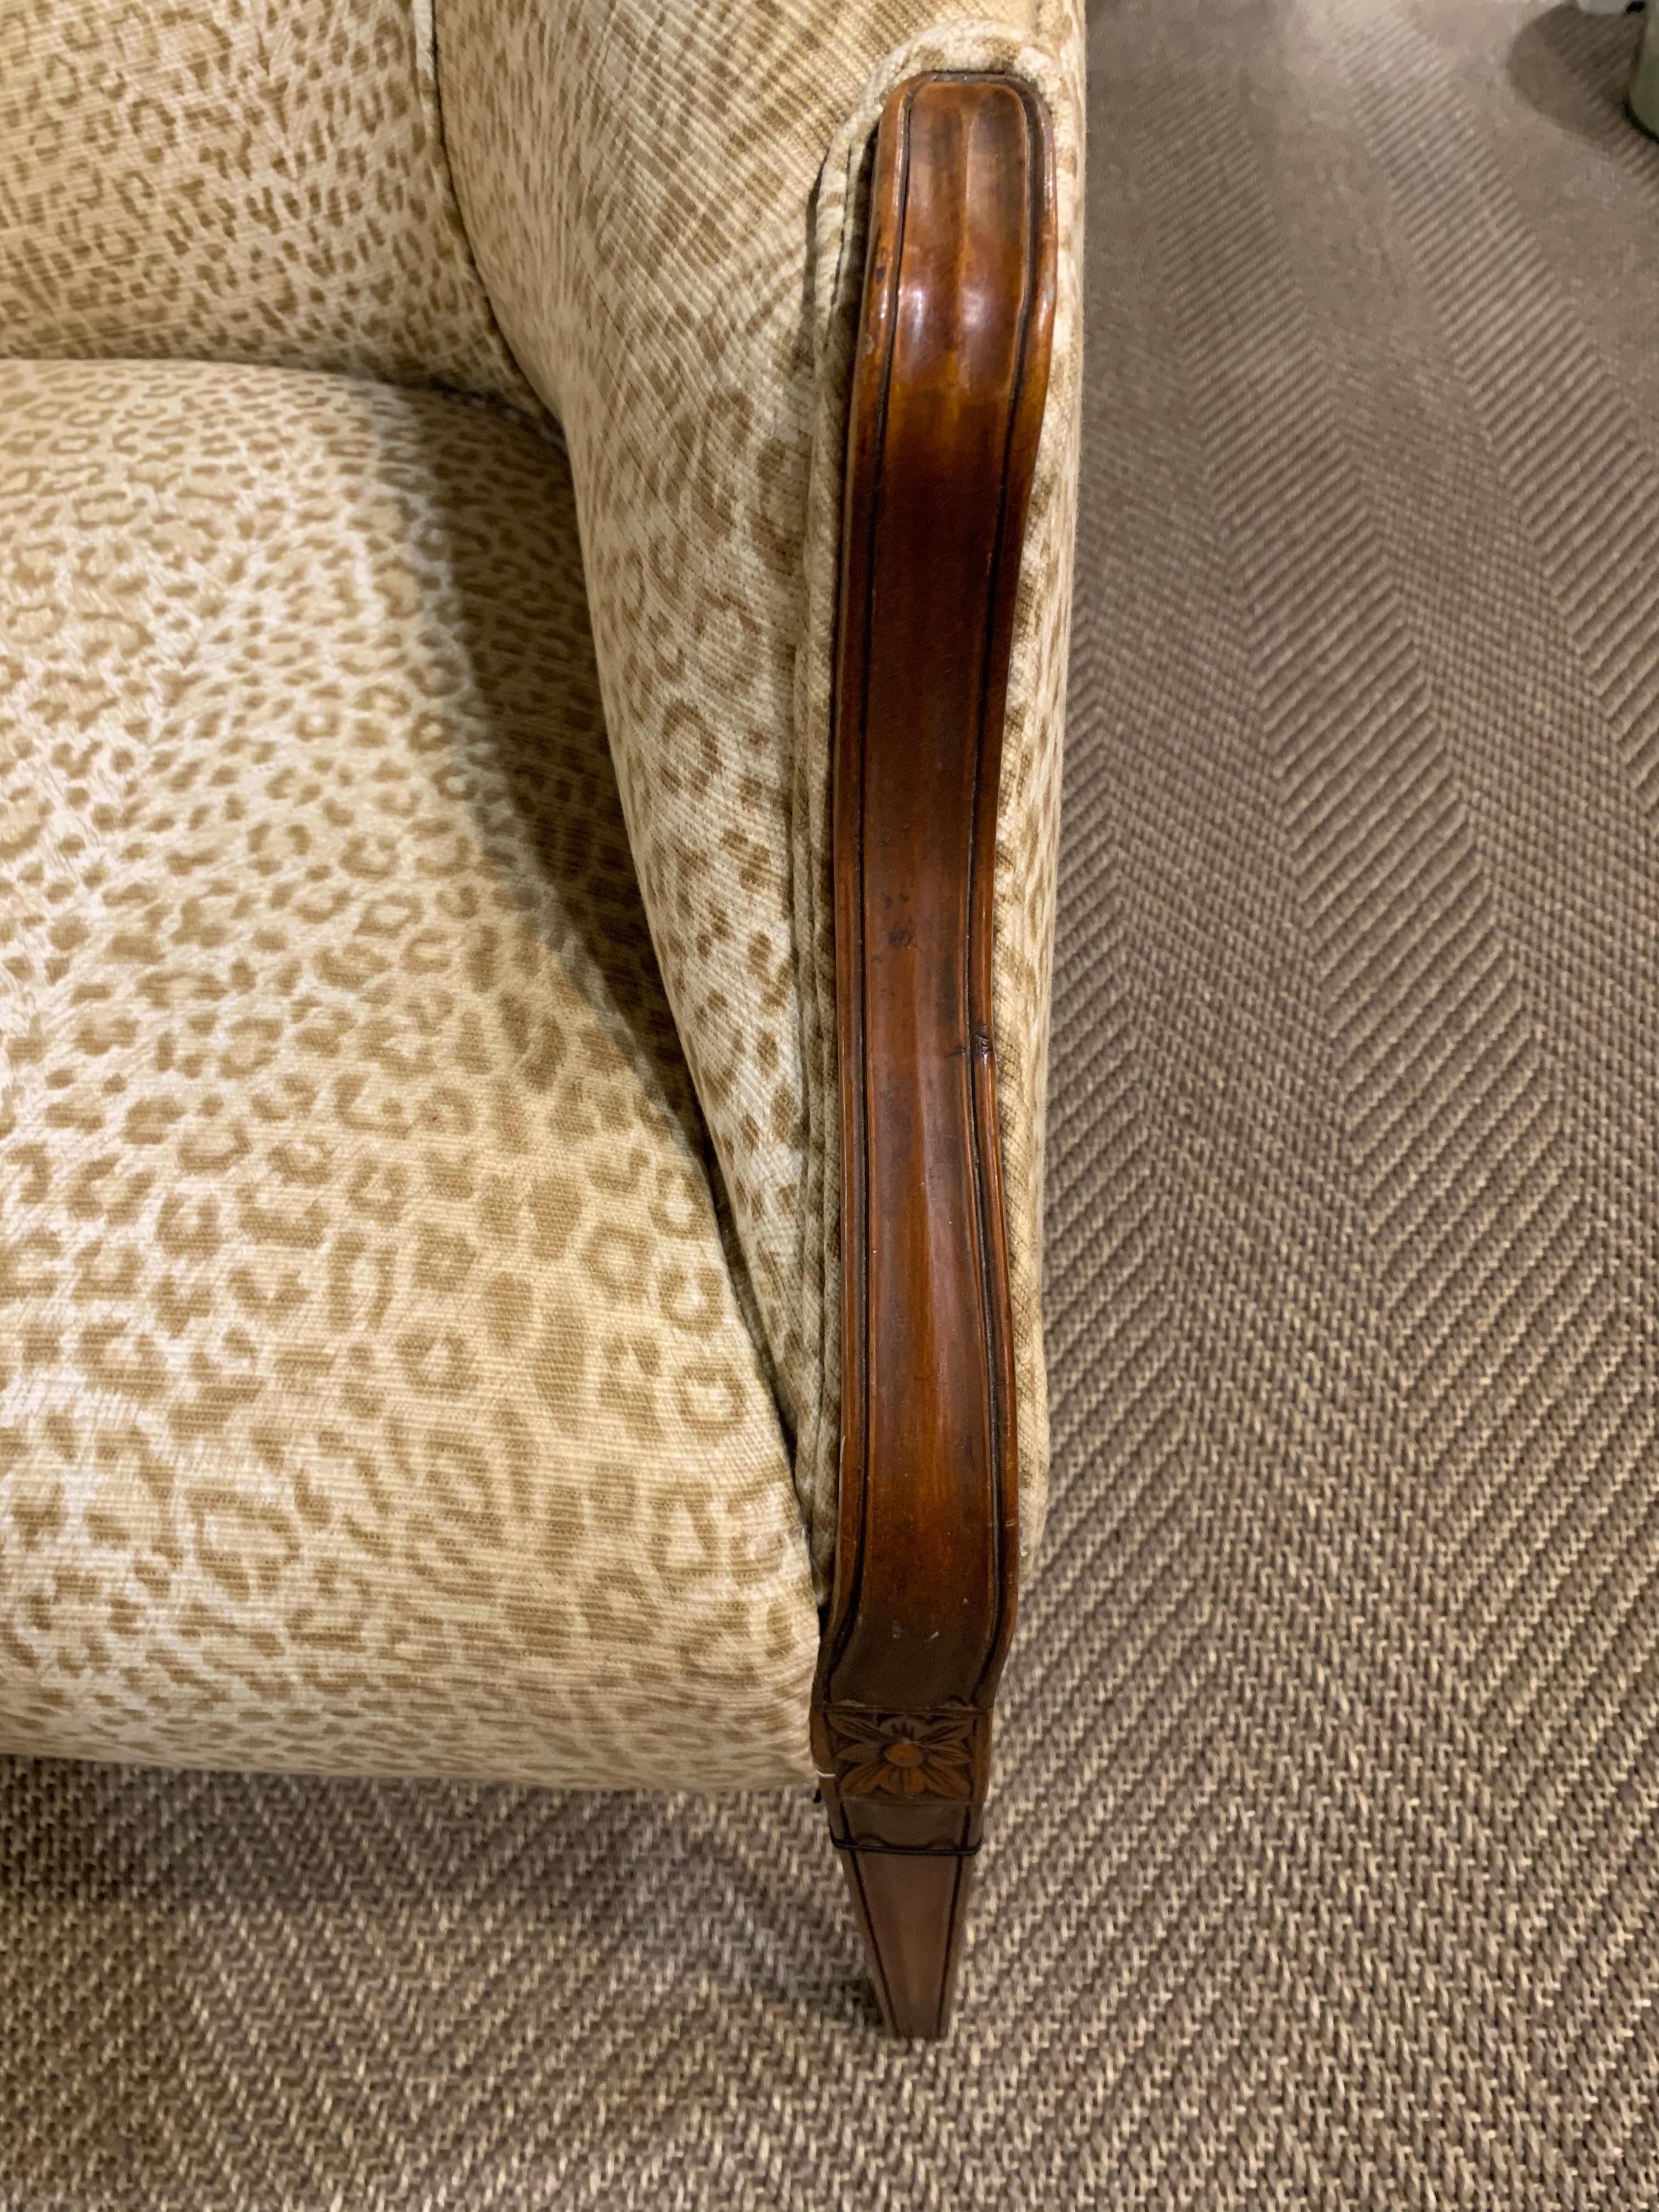 Sensational Mahogany and Animal Print Upholstered Sofa 1